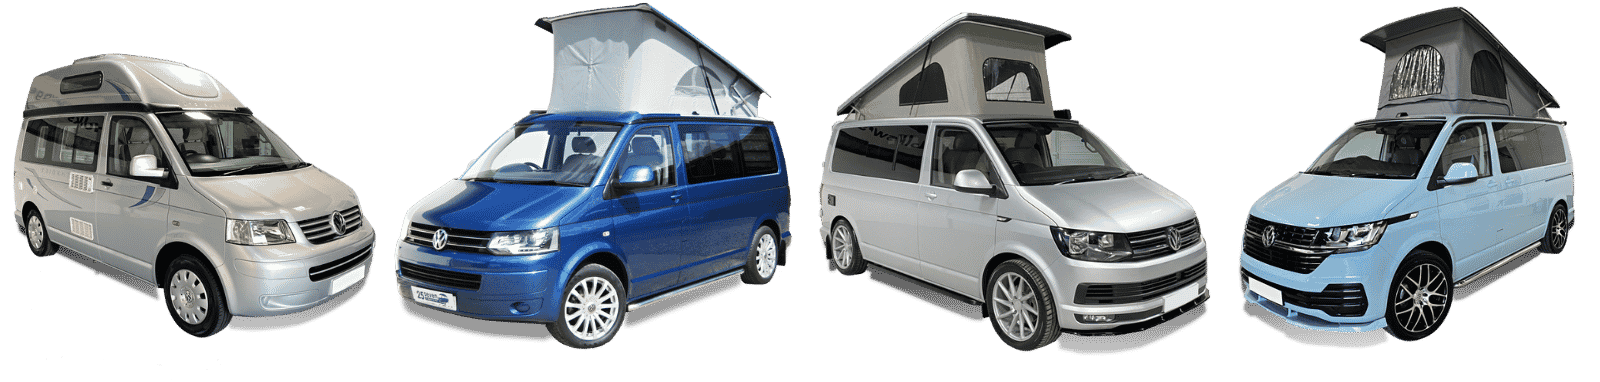 VW Camper Vans for Sale Banner 25 Seven Campers